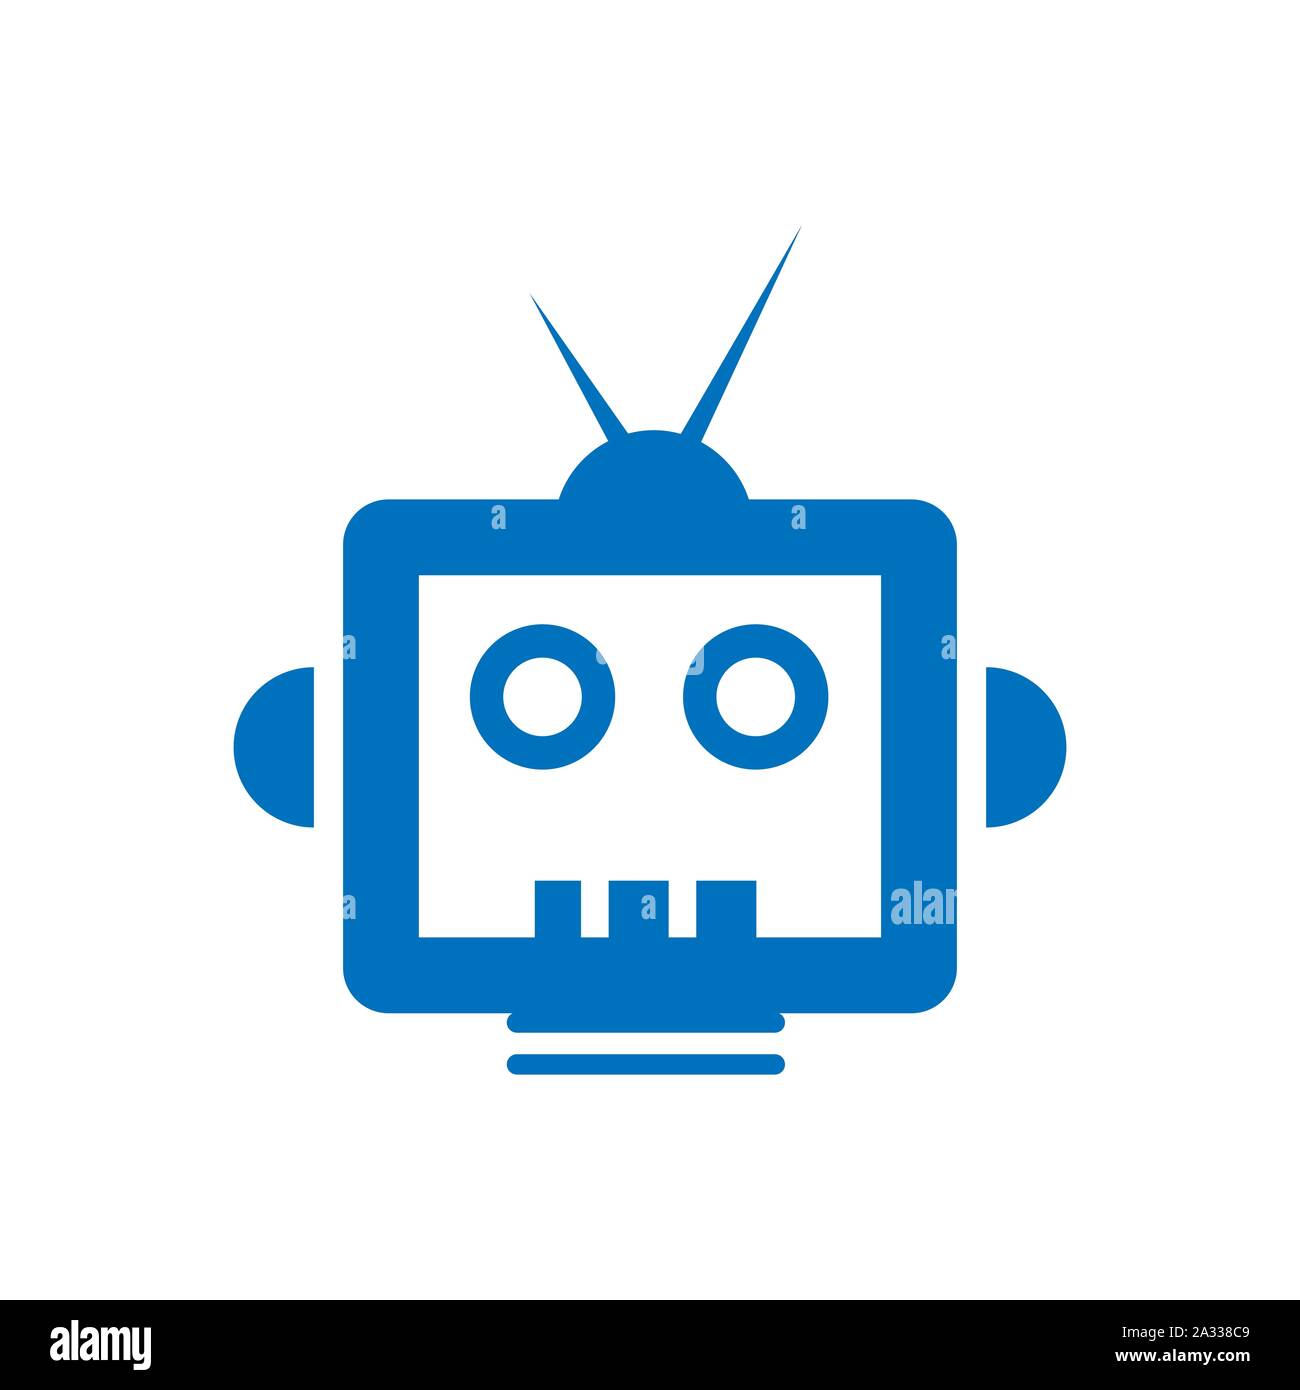 creative TV robot logo design vector creative illustration concept Stock Vector